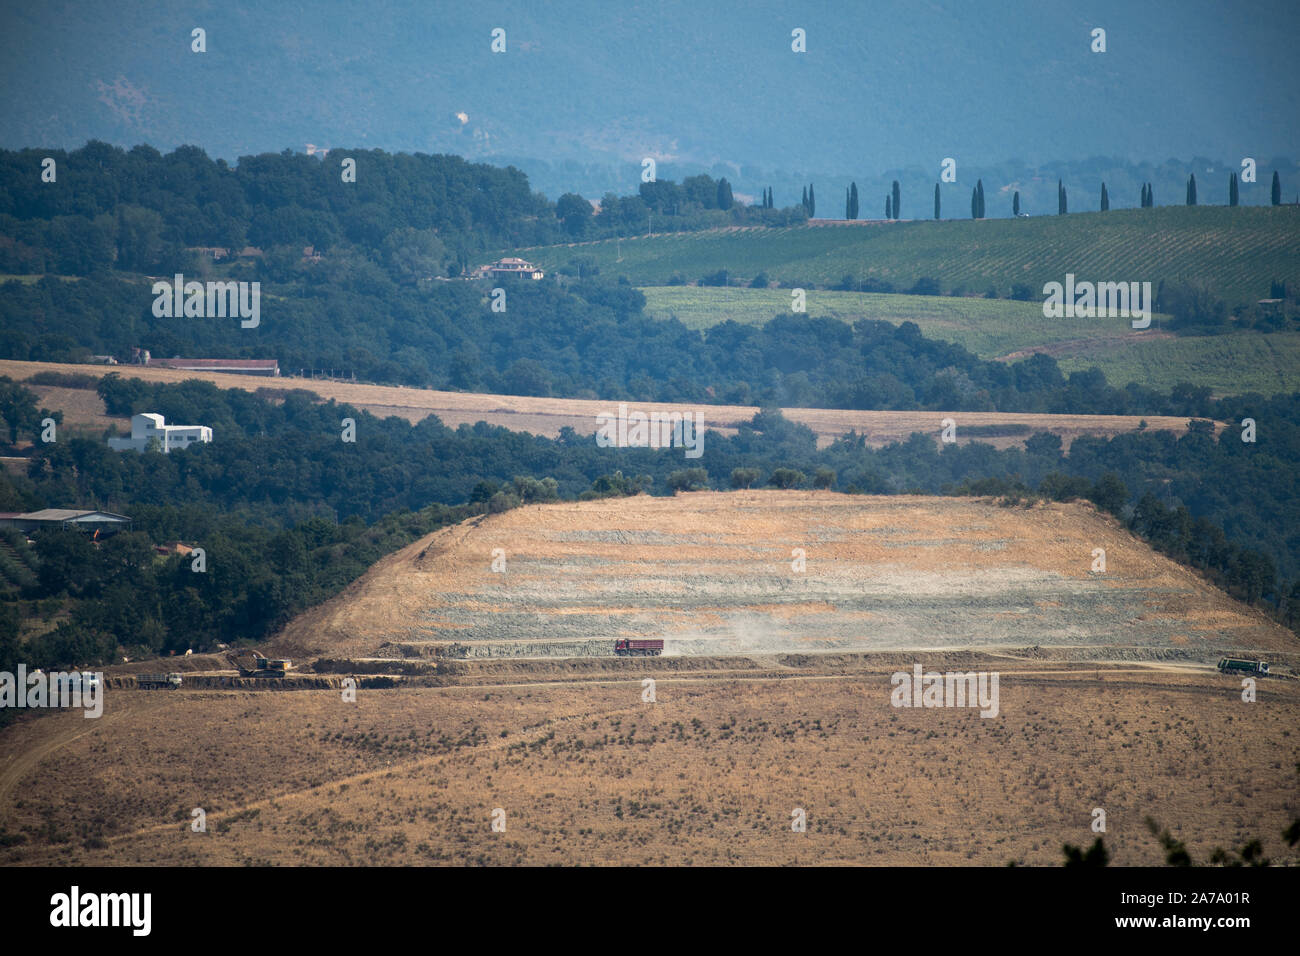 T2d Spa Baustofflieferant in Pontenaia, Umbrien, Italien. 22. August 2019 © wojciech Strozyk/Alamy Stock Foto Stockfoto